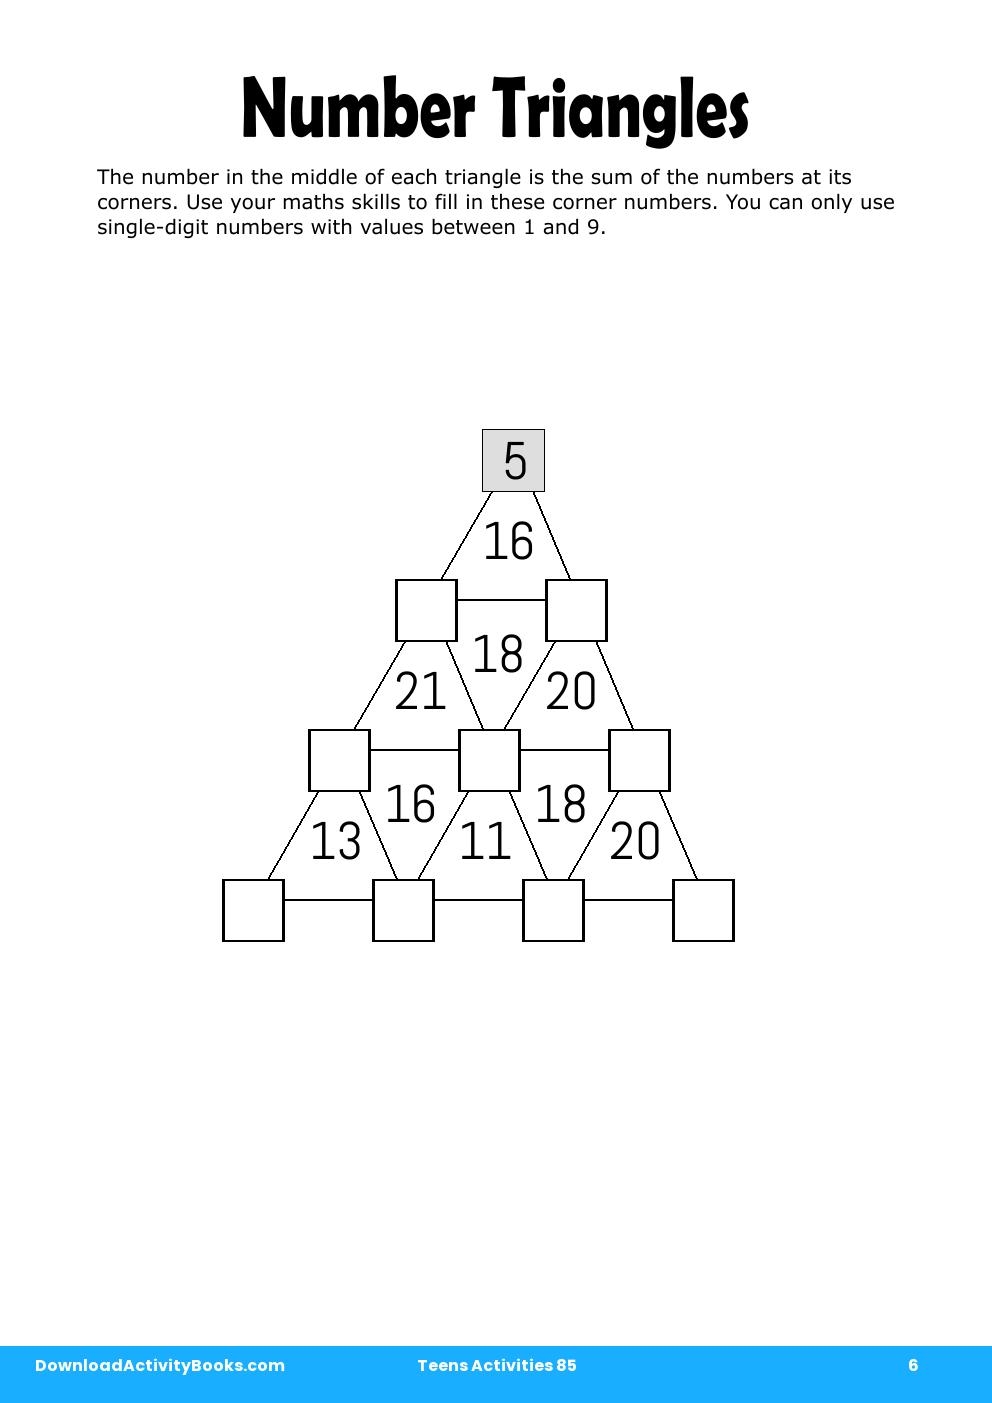 Number Triangles in Teens Activities 85